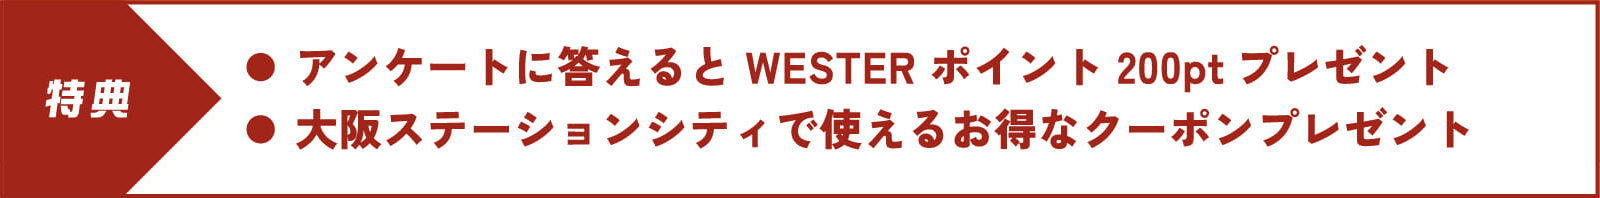 アンケートに答えるとWESTERポイント200ptプレゼント。大阪ステーションシティで使えるお得なクーポンプレゼント。大阪ステーションシティで使えるお得なクーポンプレゼント